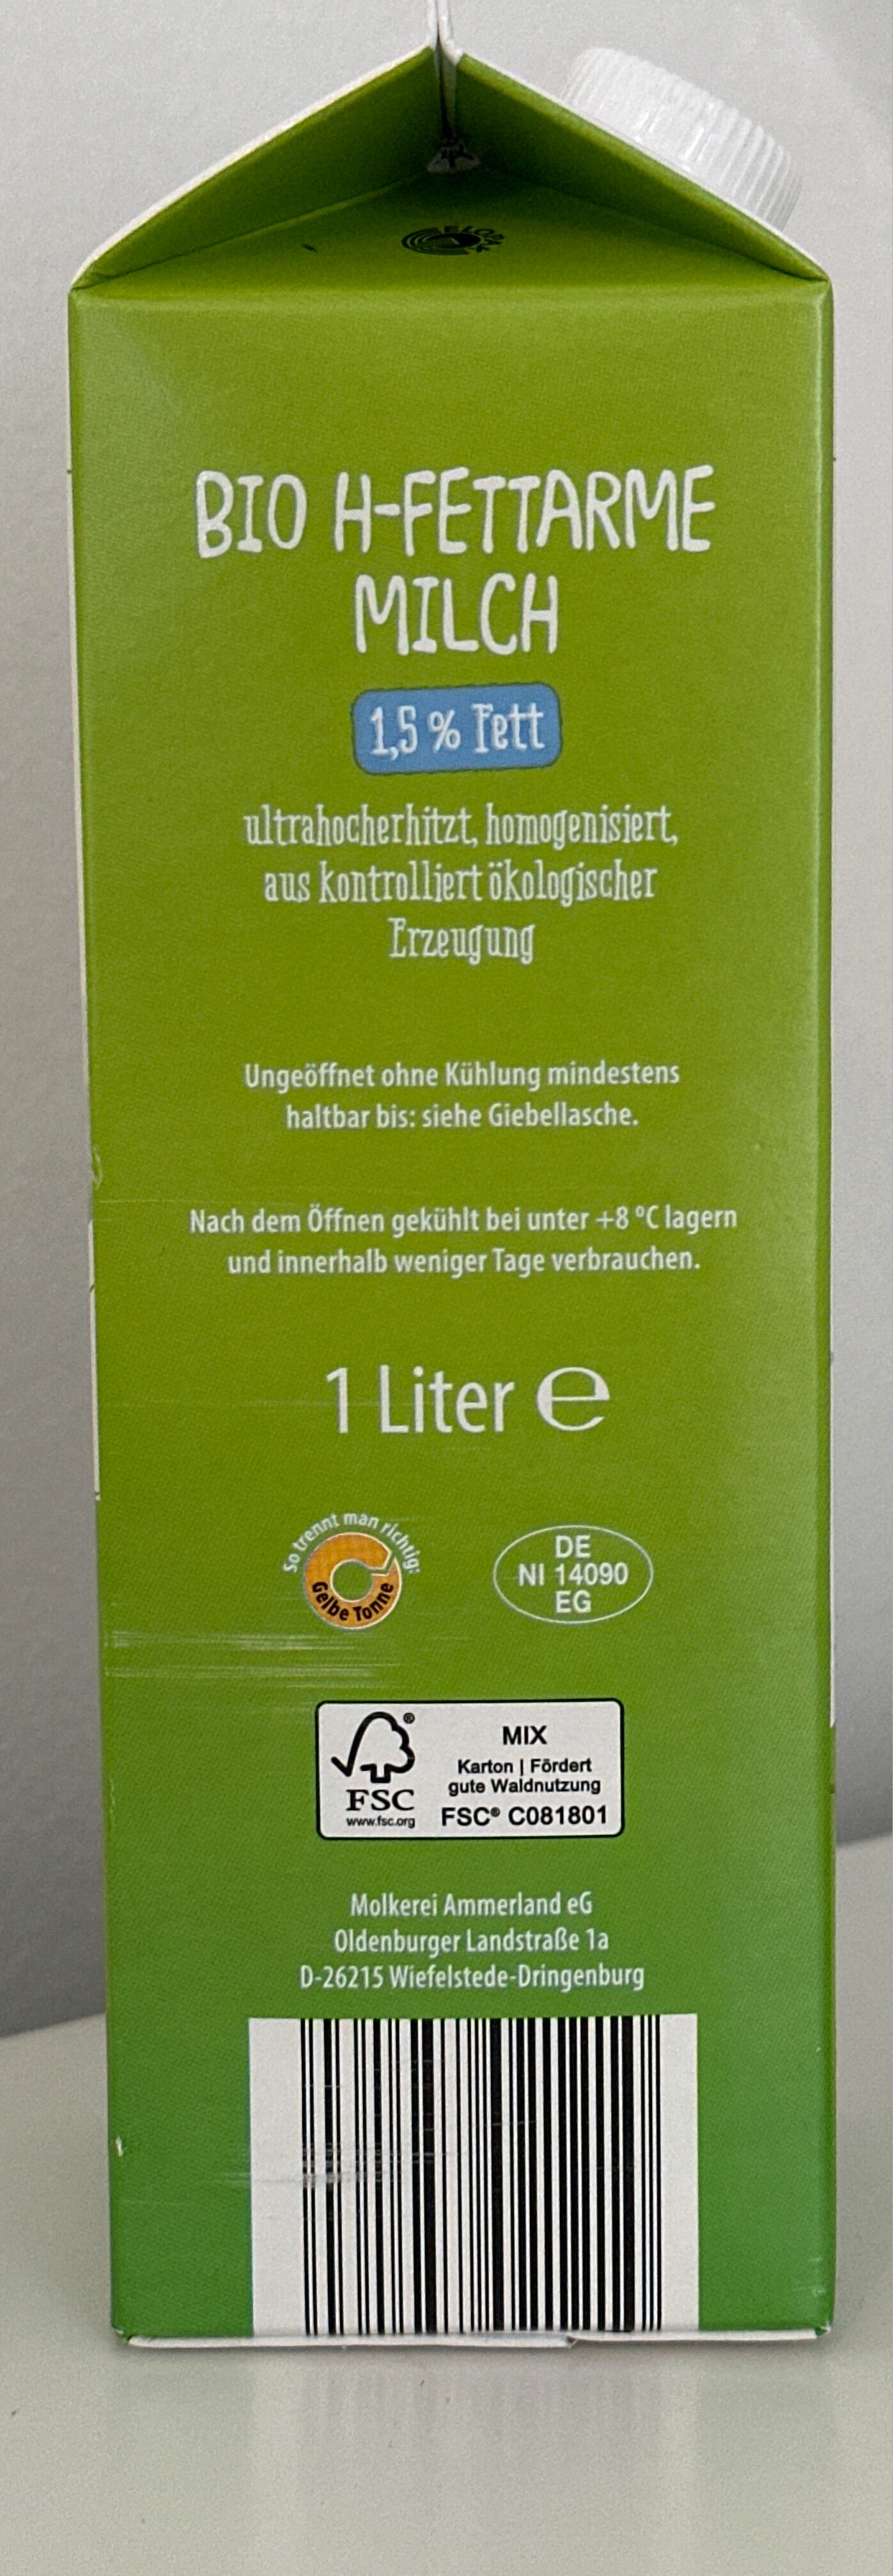 Haltbare fettarme Biomilch - Instruction de recyclage et/ou informations d'emballage - de